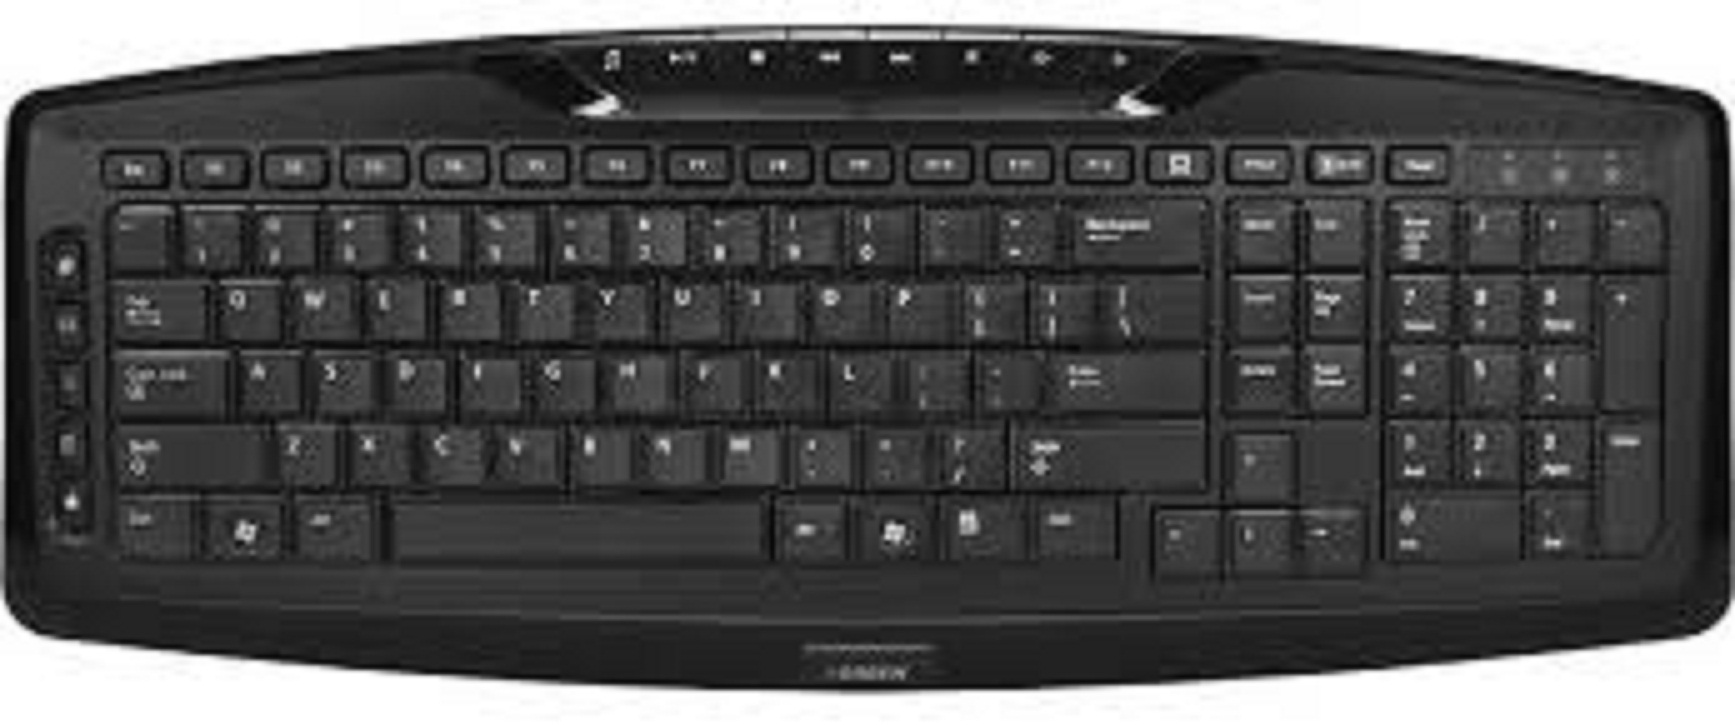 keyboard green gk 501